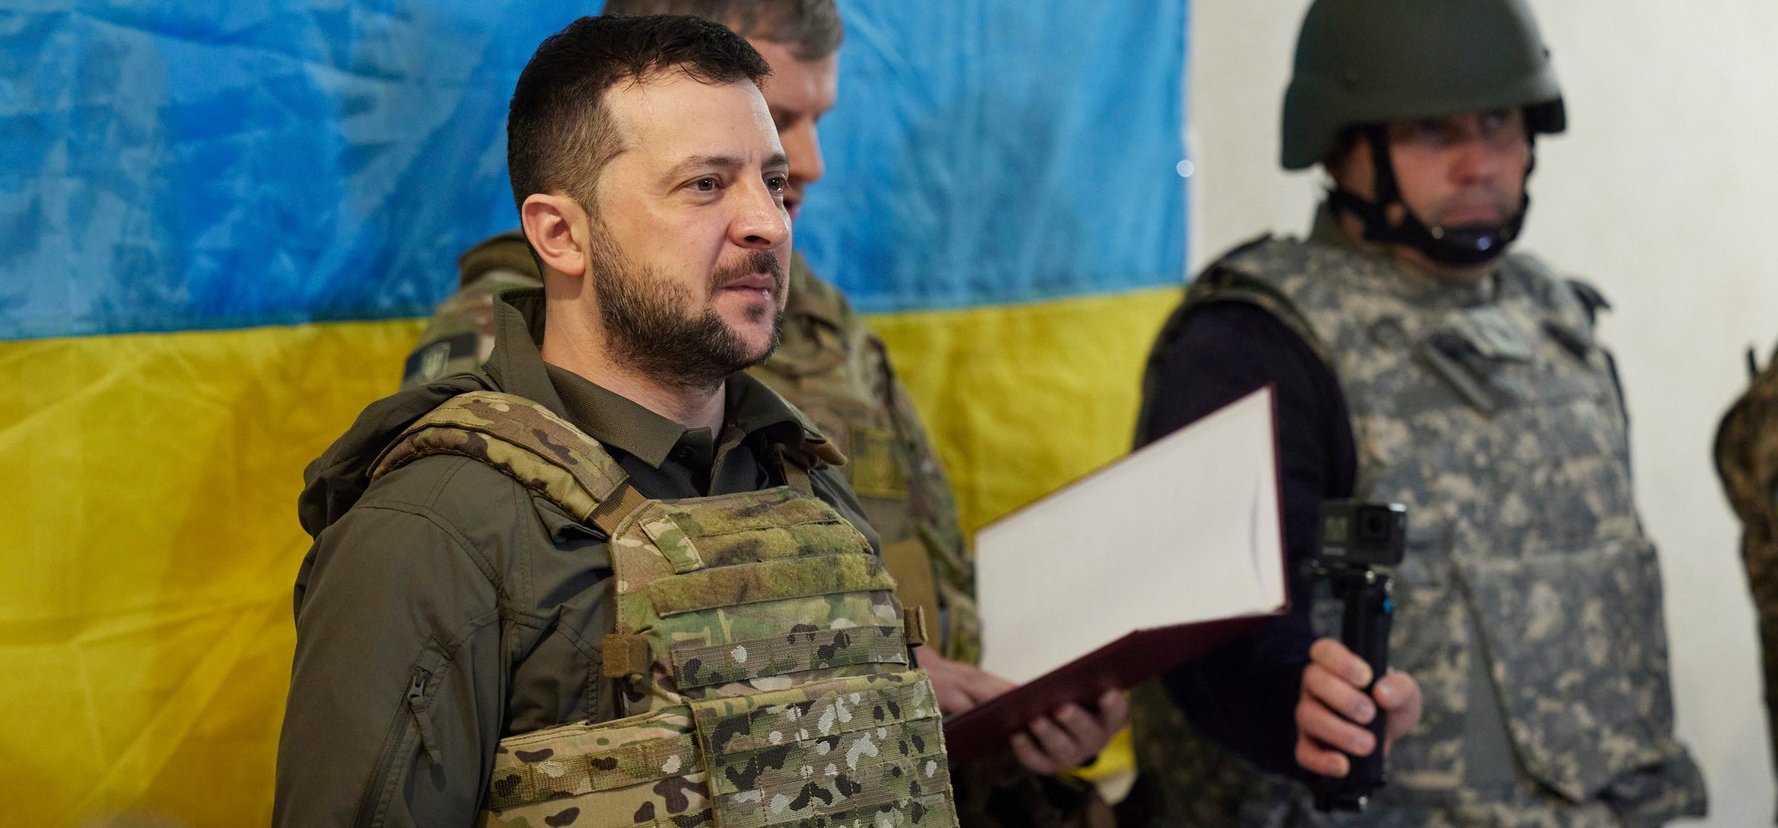 Az ukrán elnök az életét kockáztatta, de megtette ezt a lépést